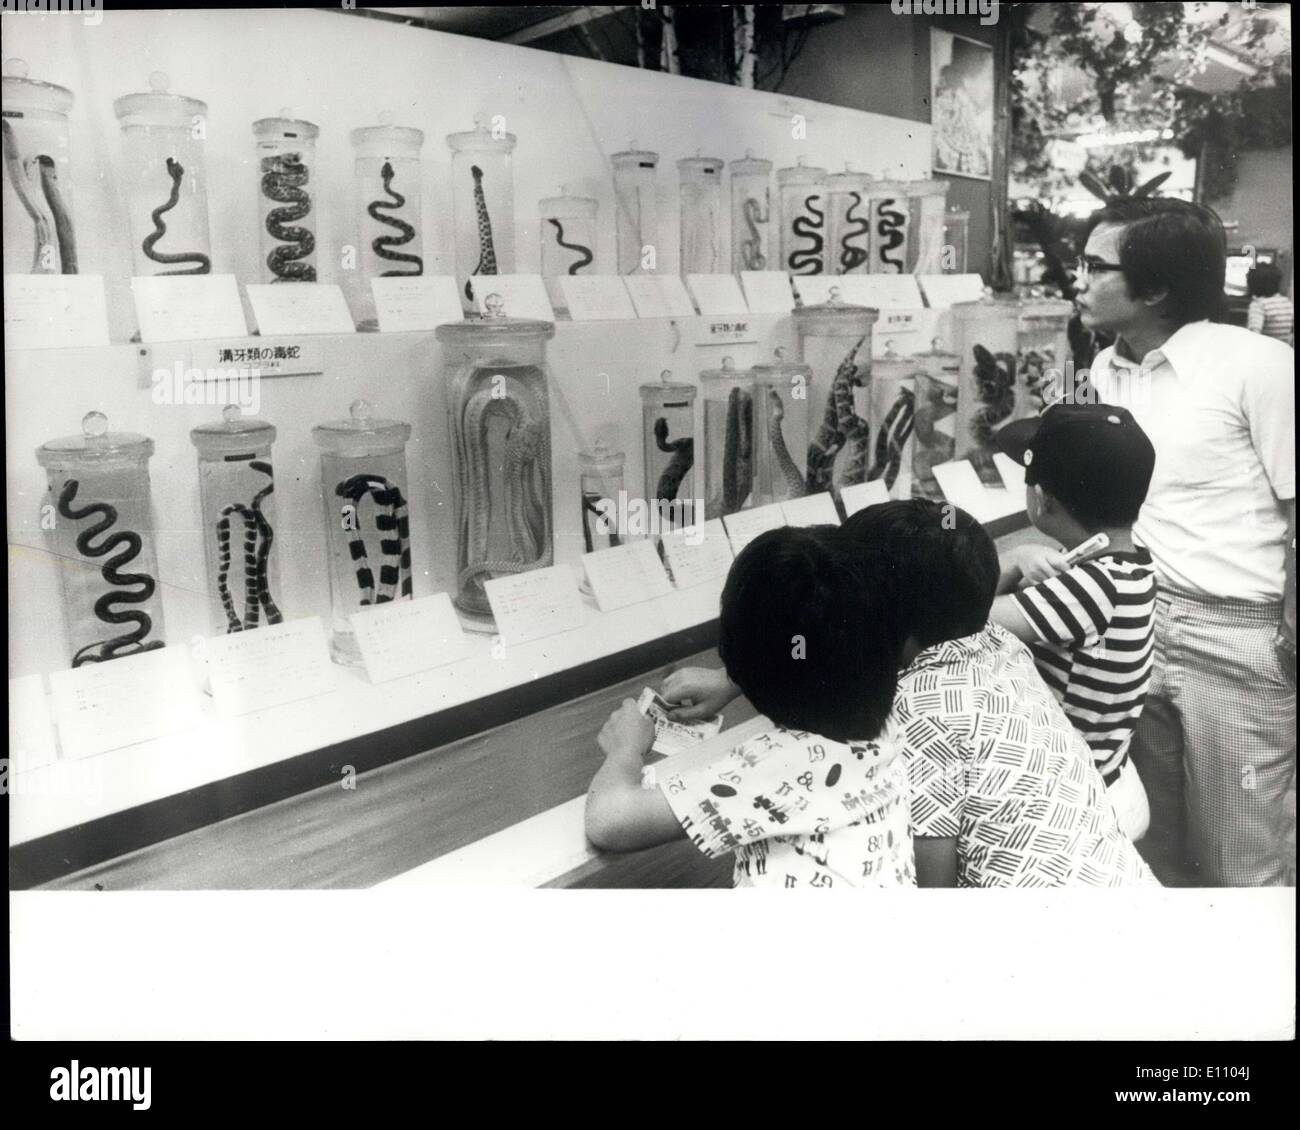 Sett. 10, 1974 - UN SERPENTE MOSTRANO IN UN GRANDE MAGAZZINO DI TOKYO: oltre 2.000 i serpenti da tutte le parti del mondo sono esposti a Tokyo department store come una attrazione aggiunta. La maggior parte dei serpenti velenosi sono, alcuni in grado di uccidere un uomo o un animale di grandi dimensioni, come un cavallo, in pochi minuti con il suo veleno. A prescindere dal campione i serpenti in bottiglie, live pitoni e boa-costrizioni sono parte della mostra separati dal pubblico mediante una piastra di vetro di gabbie. Foto Stock